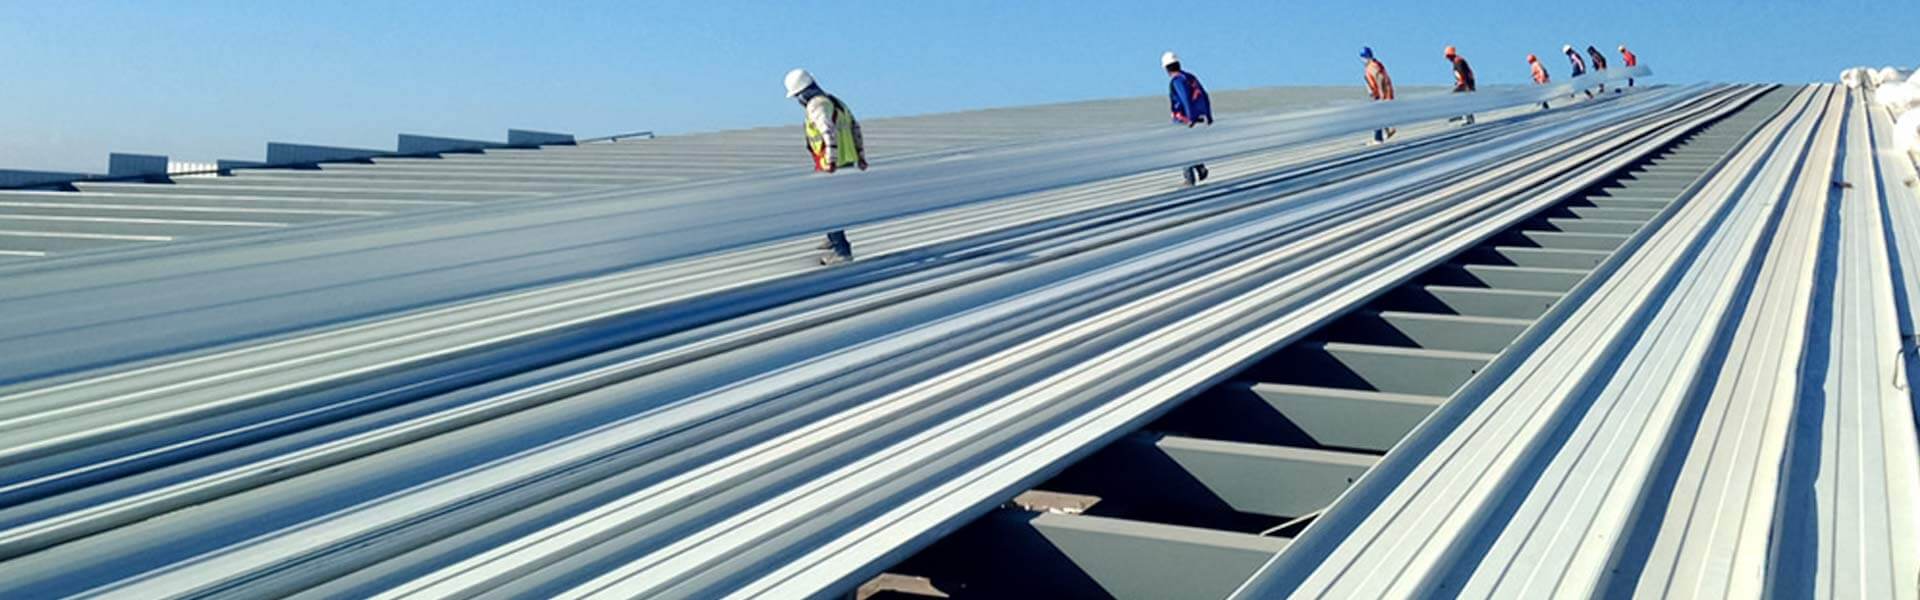 Trabajadores de la construcción instalando lámina KR-18 en un techo